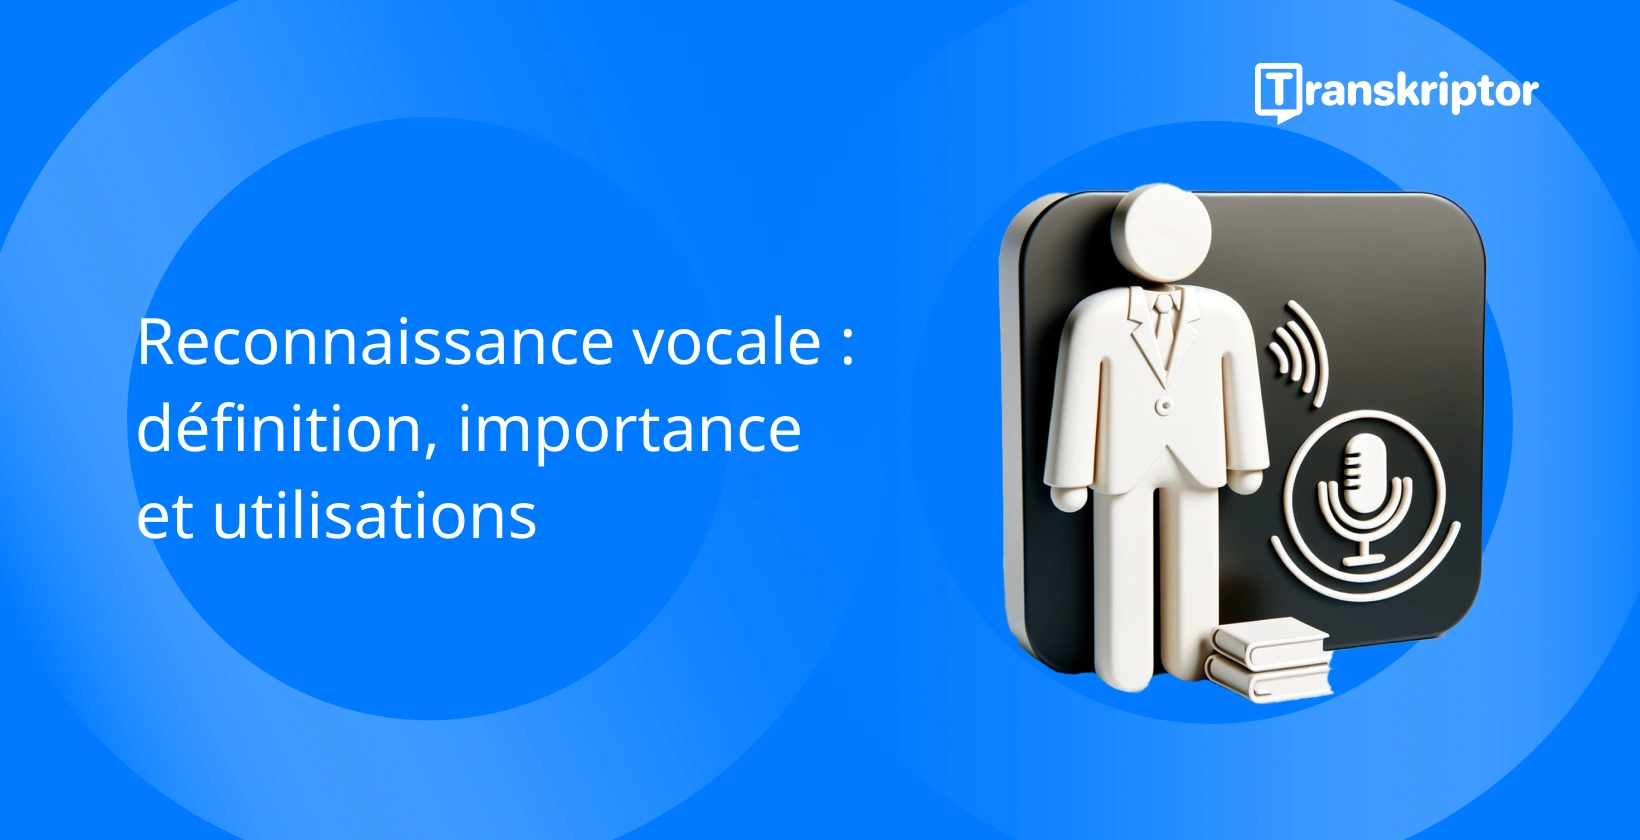 Reconnaissance vocale, montrant une figure avec microphone et ondes sonores, pour la technologie de traitement audio.